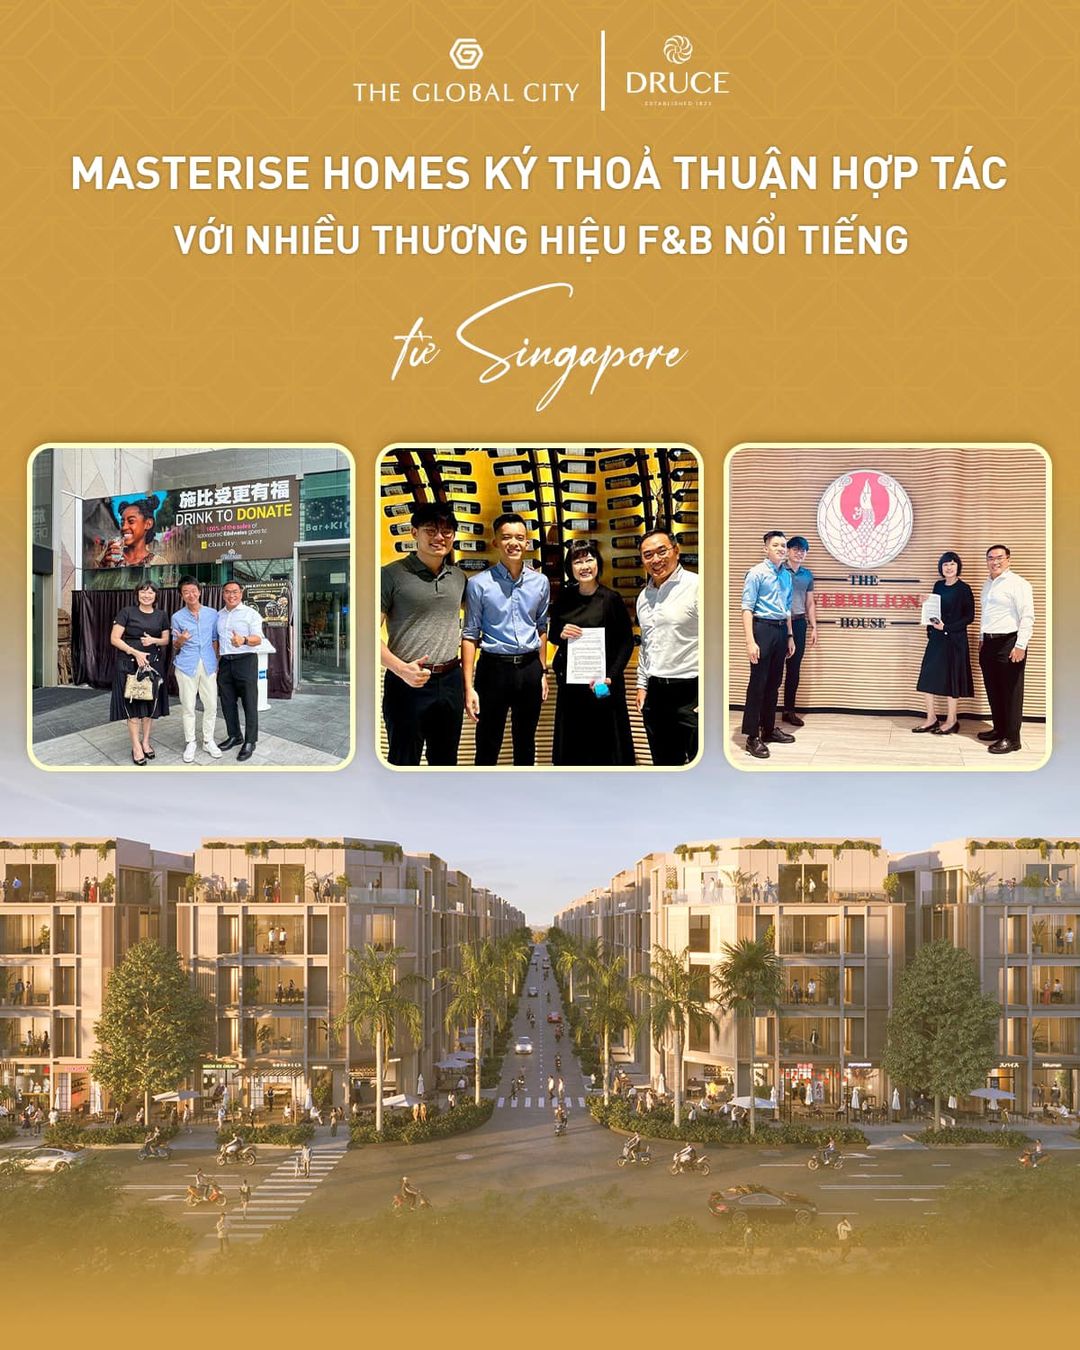 Masterise Homes mang thương hiệu Singapore đến The Global City